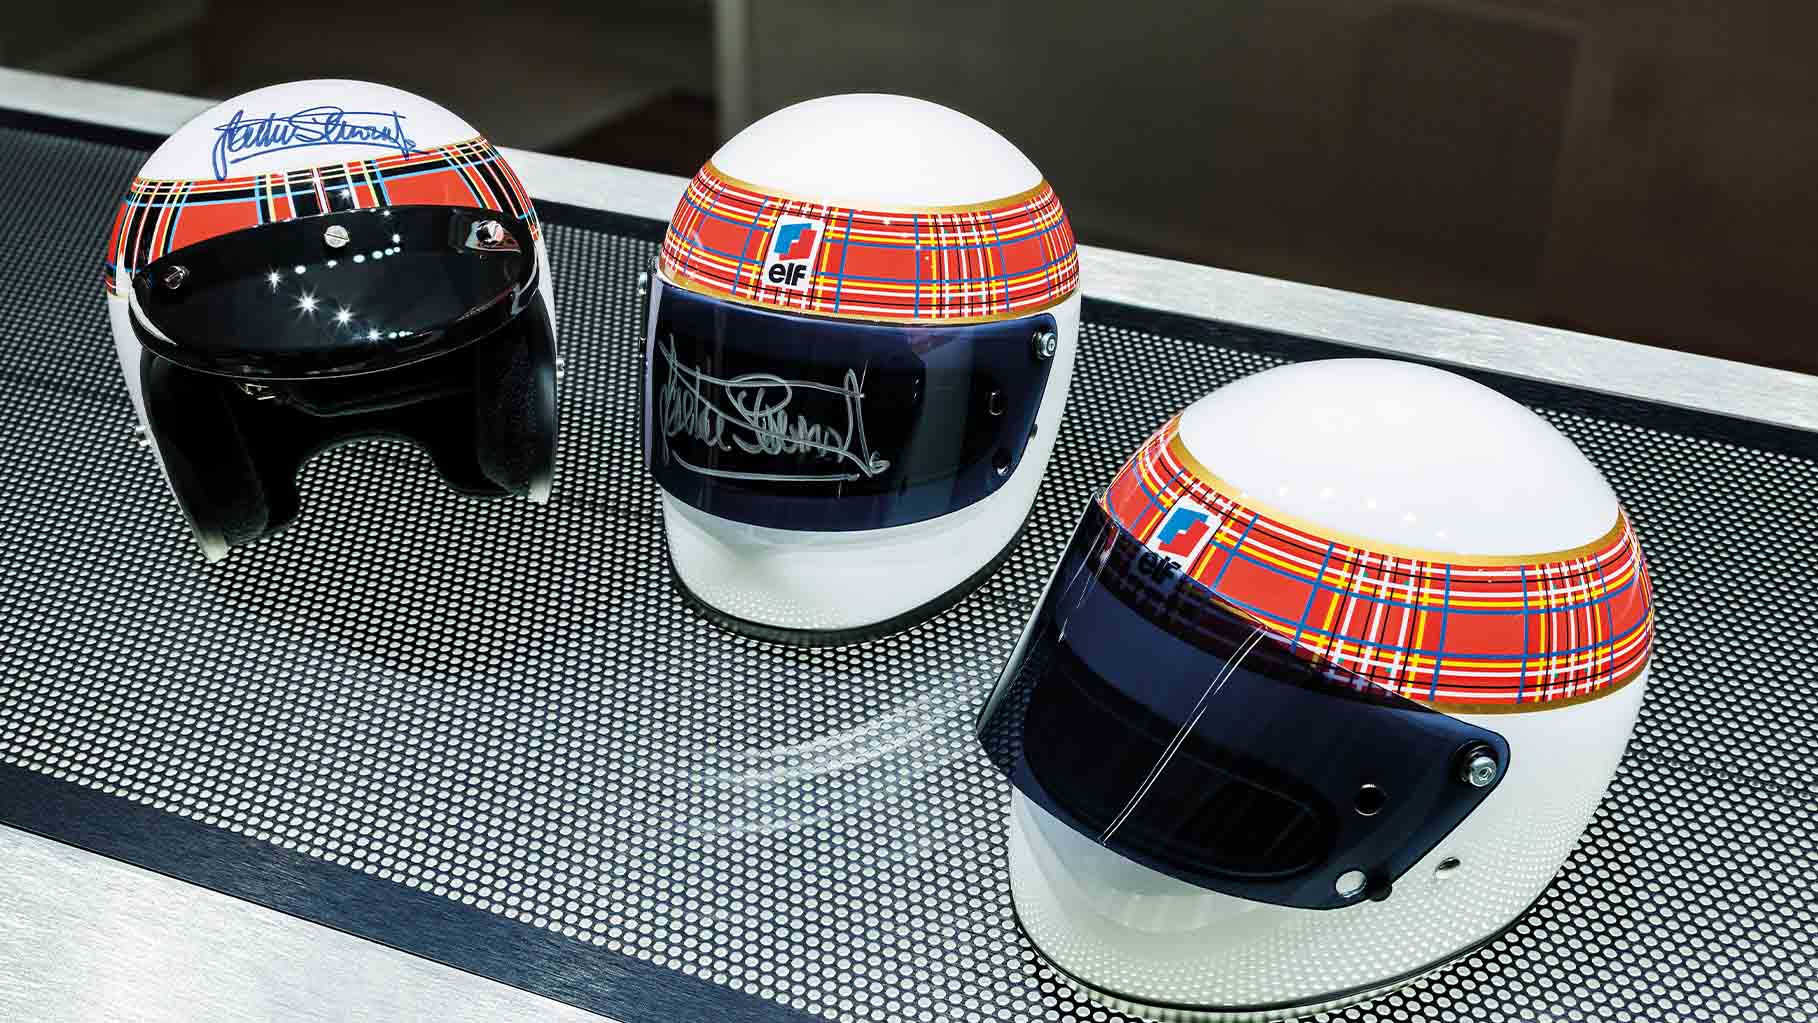 Jackie Stewart signed helmets